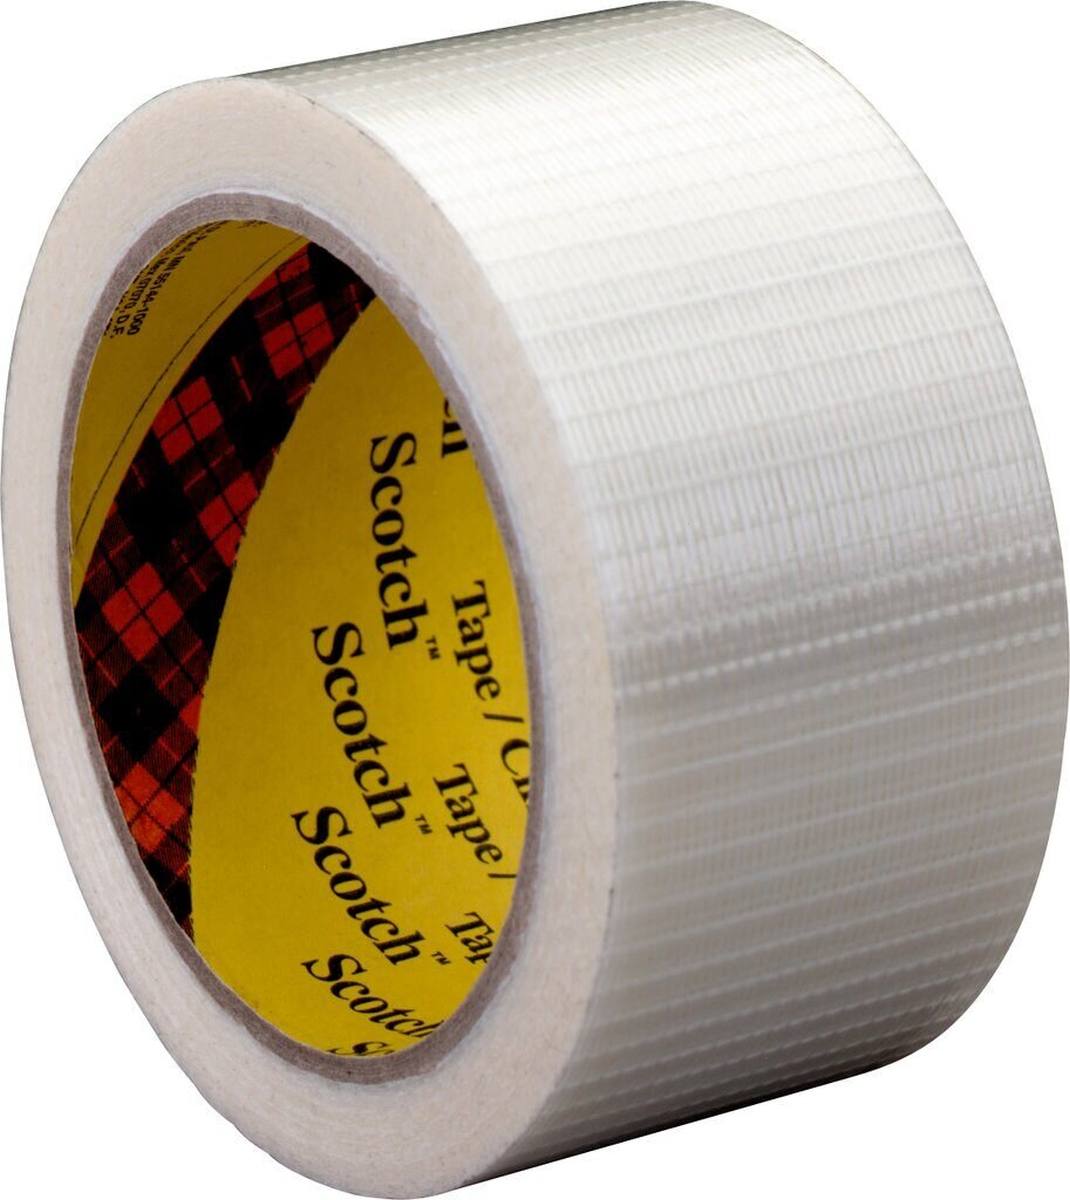 3M Scotch Filament Adhesive Tape 8959, trasparente, 75 mm x 50 m, 0,145 mm